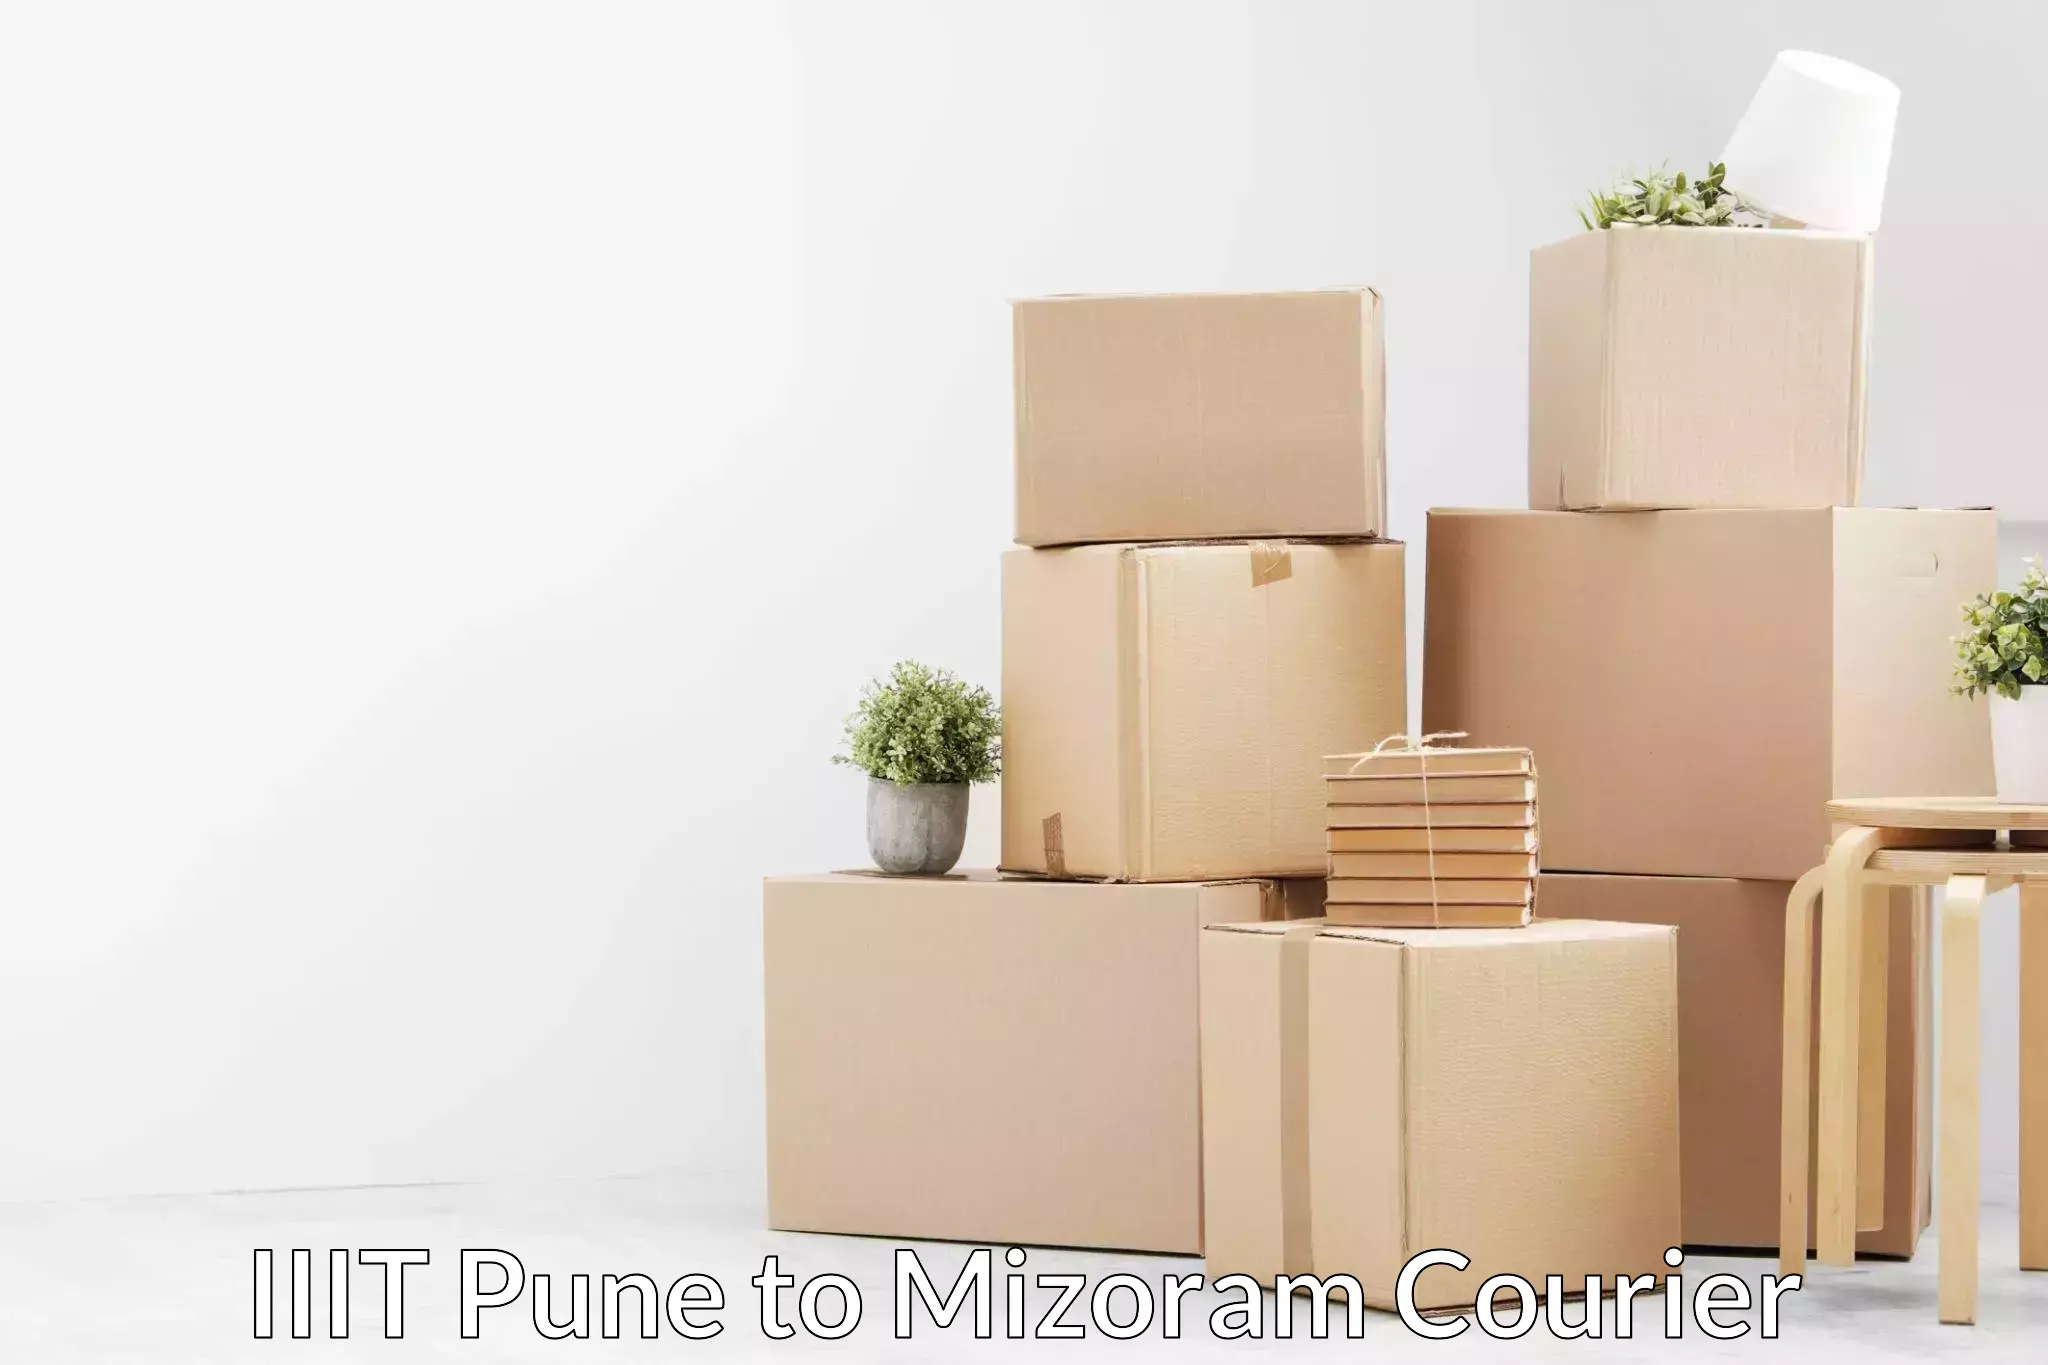 Doorstep moving services IIIT Pune to Khawzawl